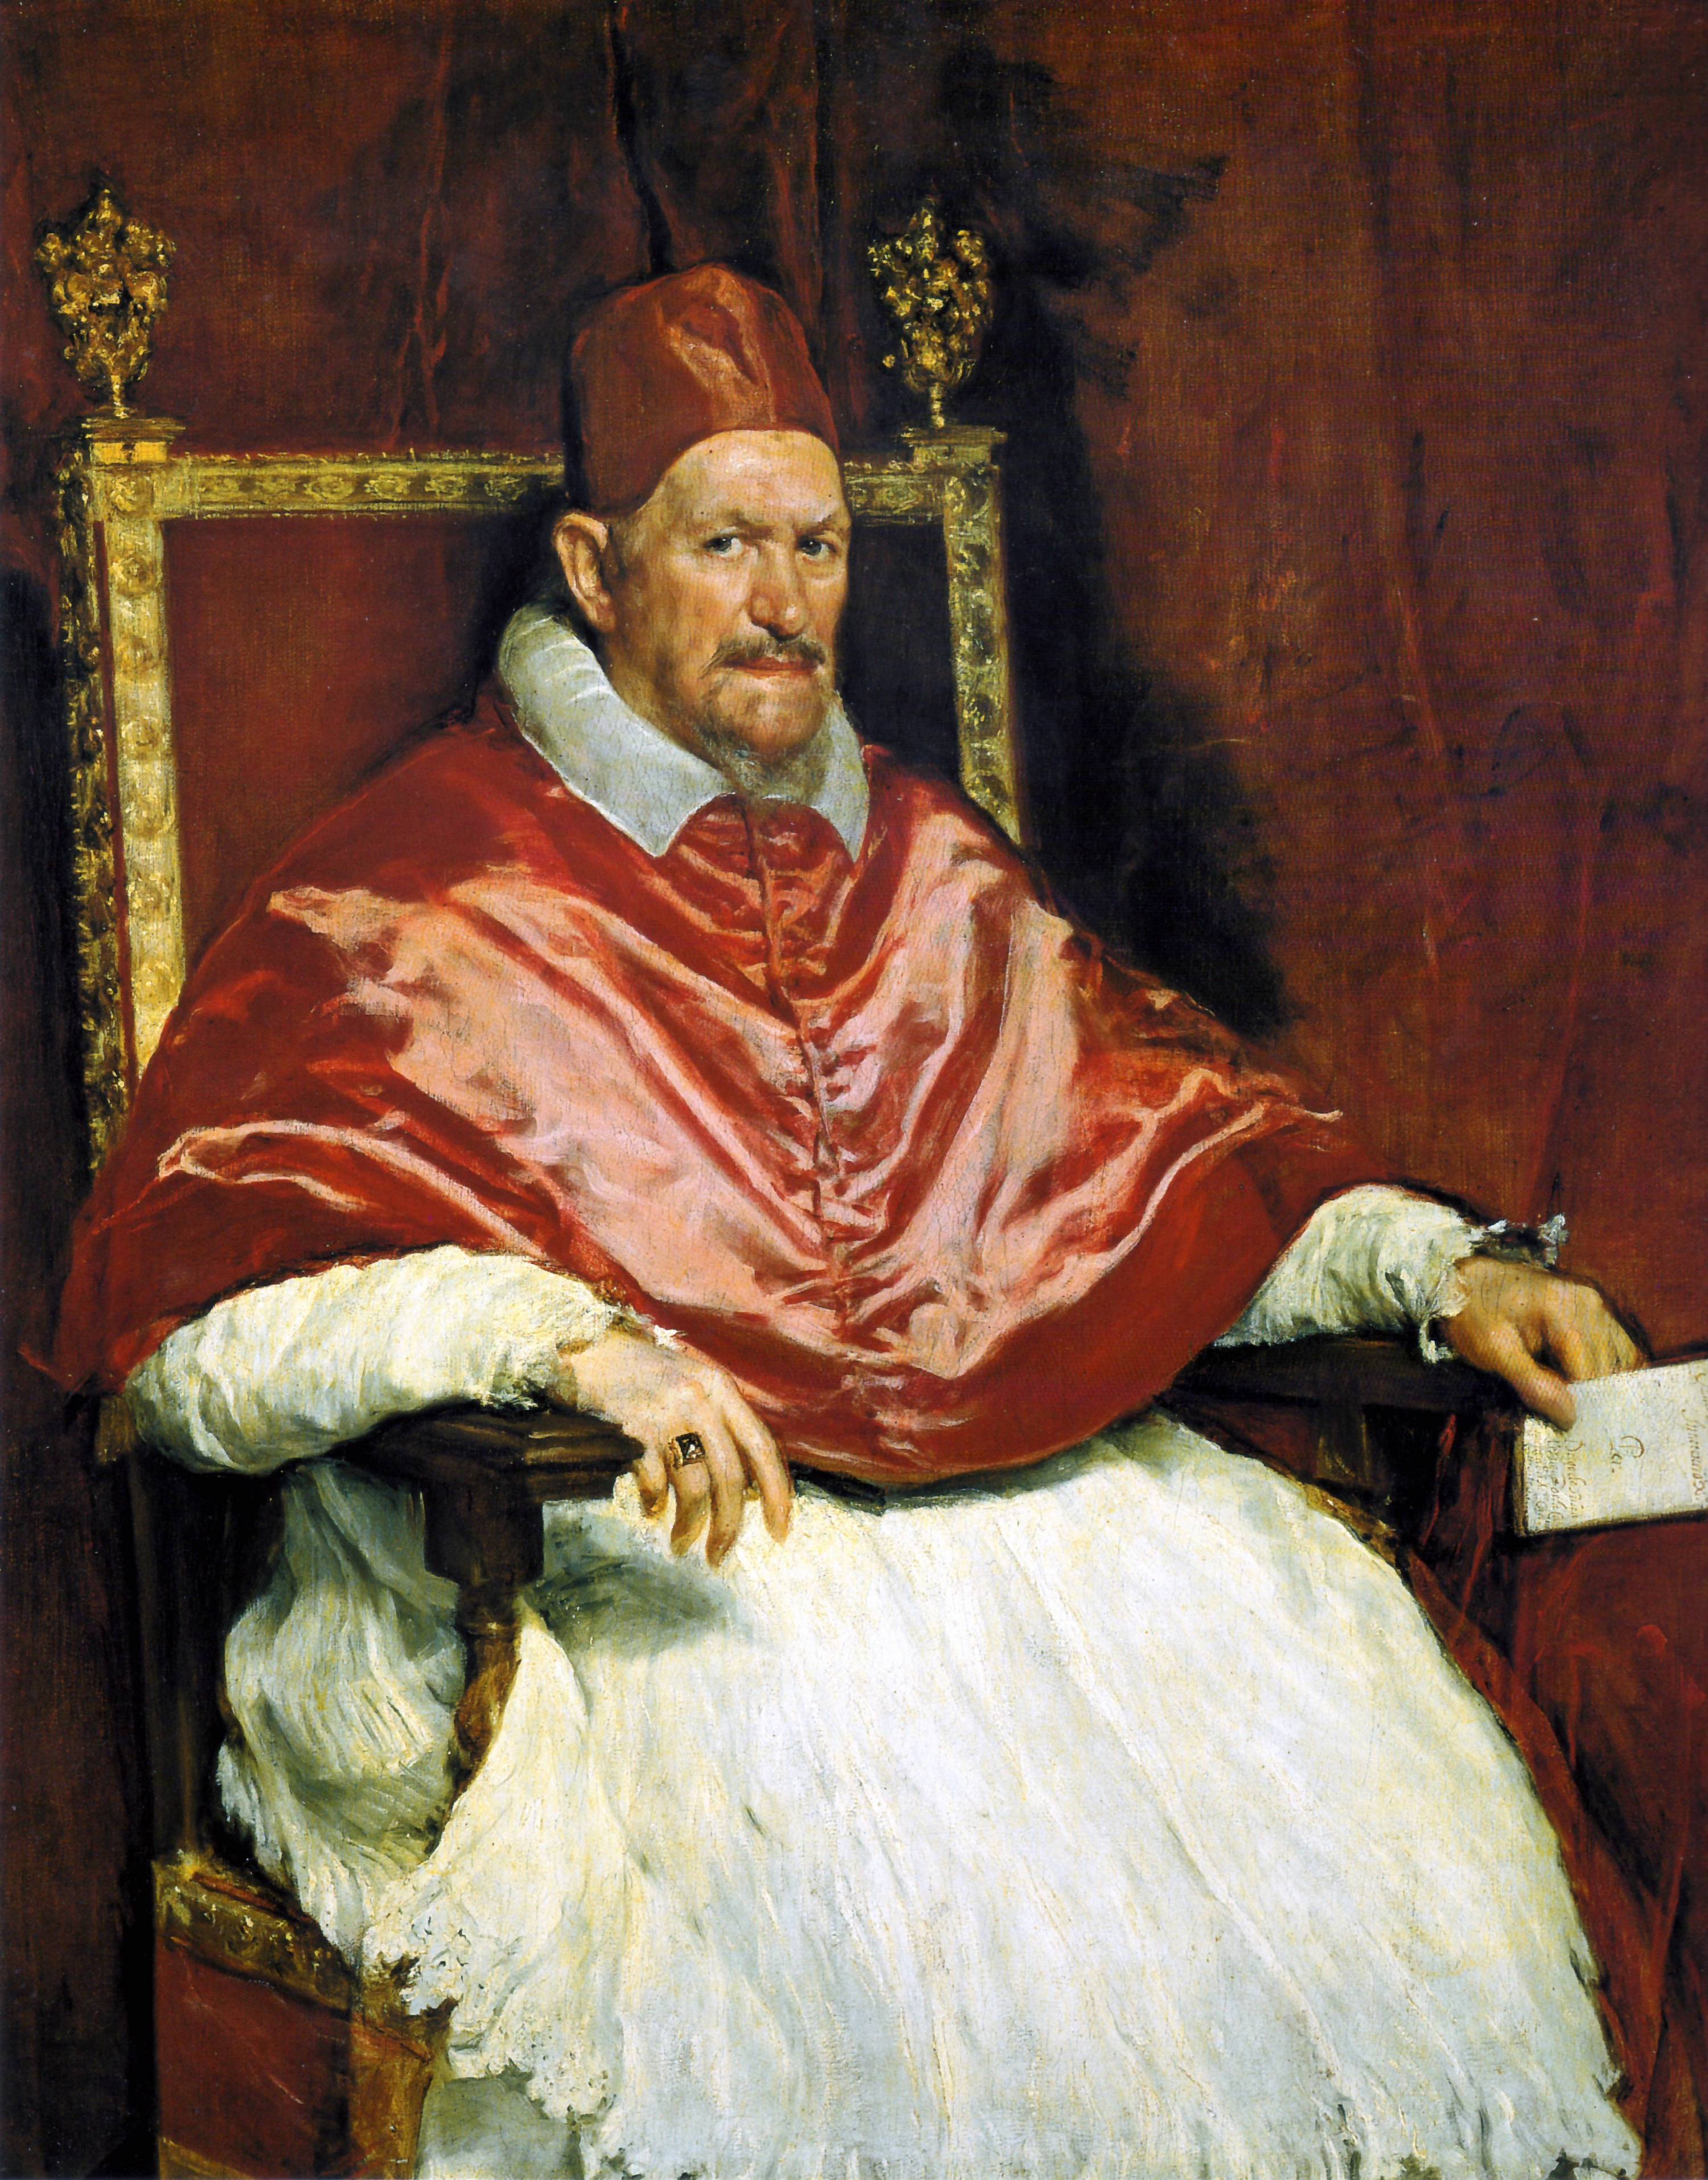 教皇英諾森十世像 by Diego Velázquez - ca. 1650 - 141 × 119 cm 